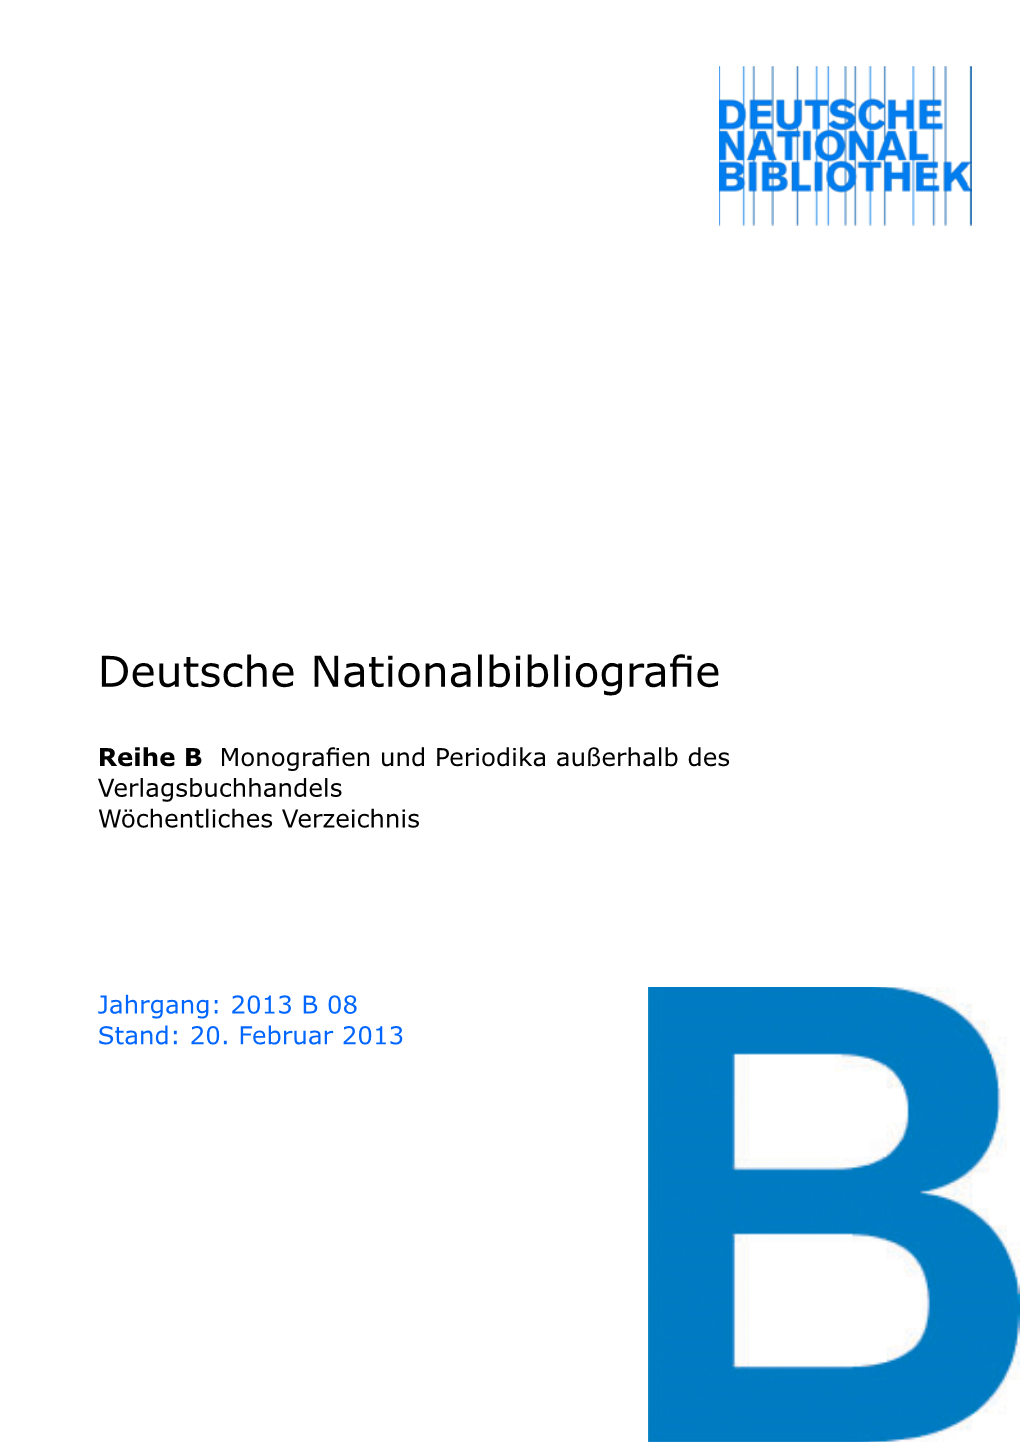 Deutsche Nationalbibliografie 2013 B 08